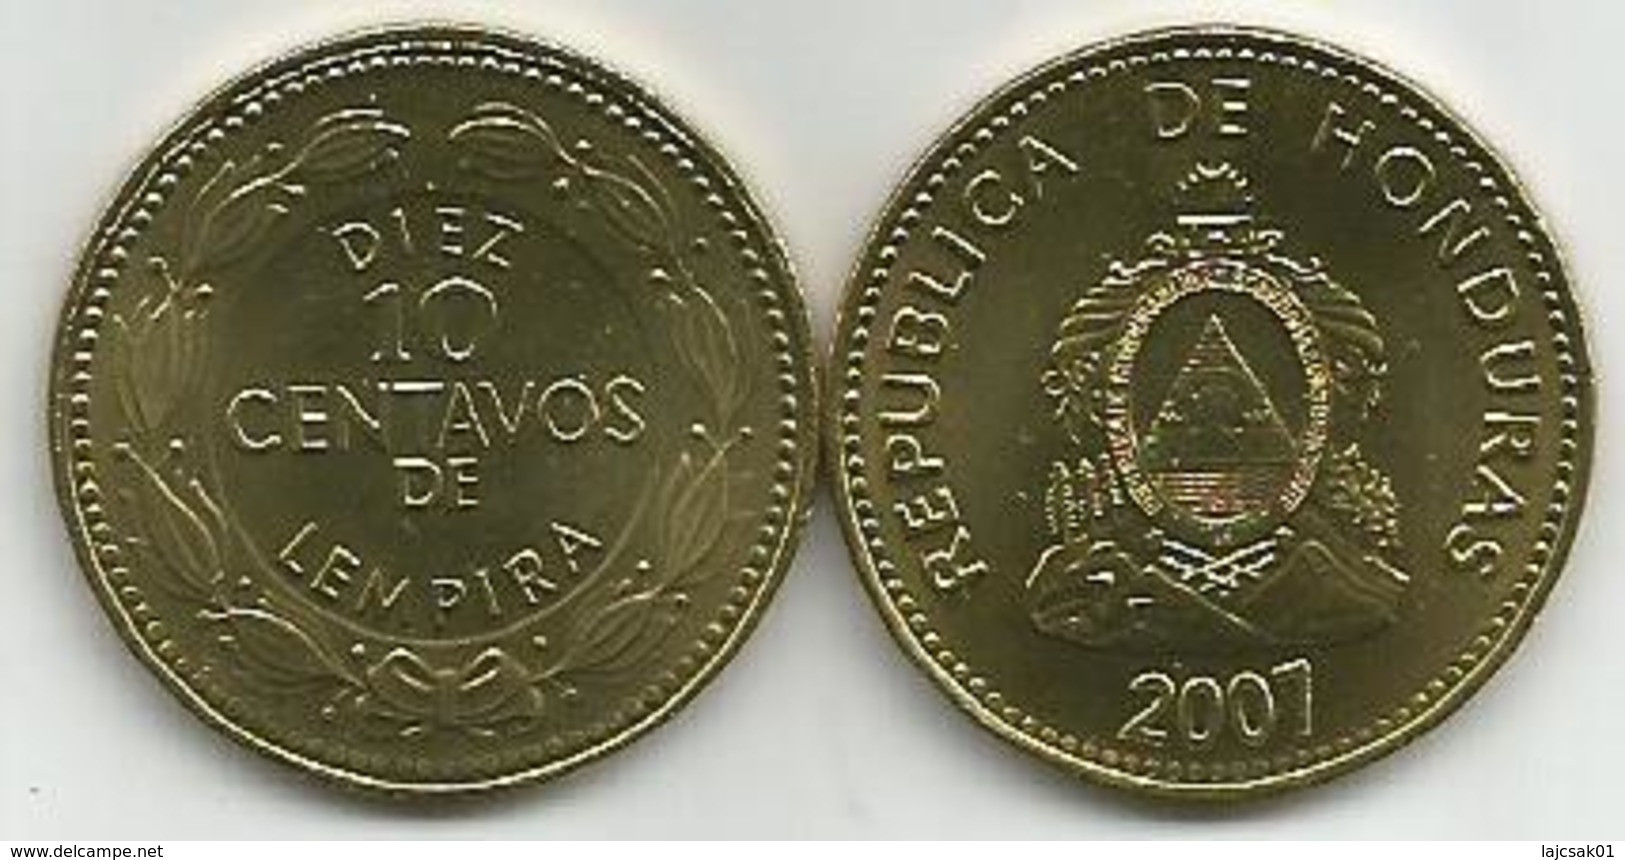 Honduras 10 Centavos 2007. High Grade - Honduras